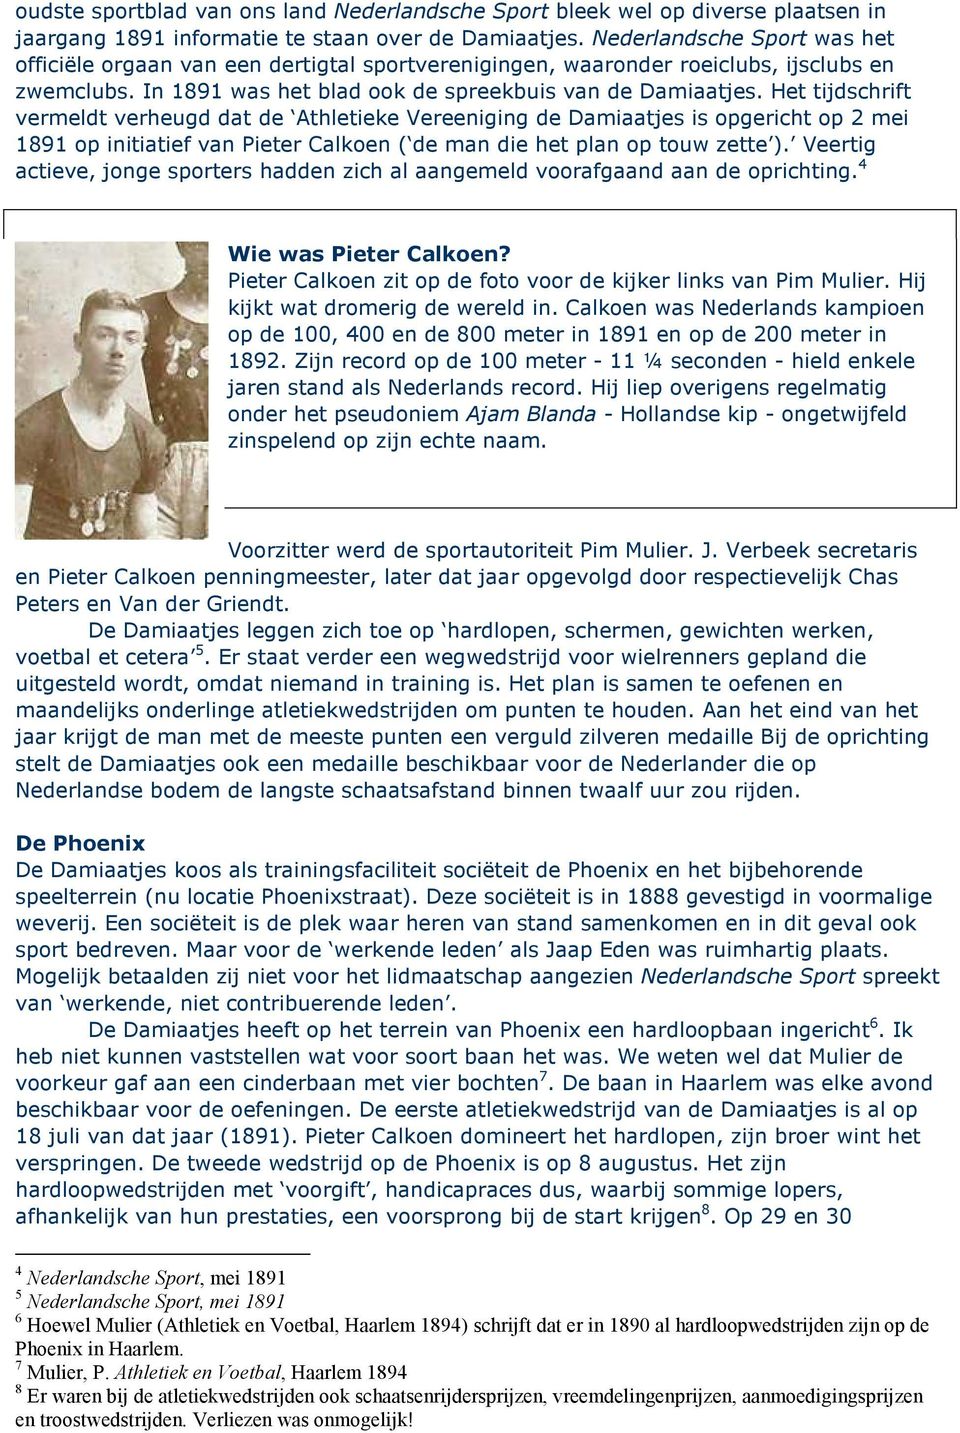 Het tijdschrift vermeldt verheugd dat de Athletieke Vereeniging de Damiaatjes is opgericht op 2 mei 1891 op initiatief van Pieter Calkoen ( de man die het plan op touw zette ).